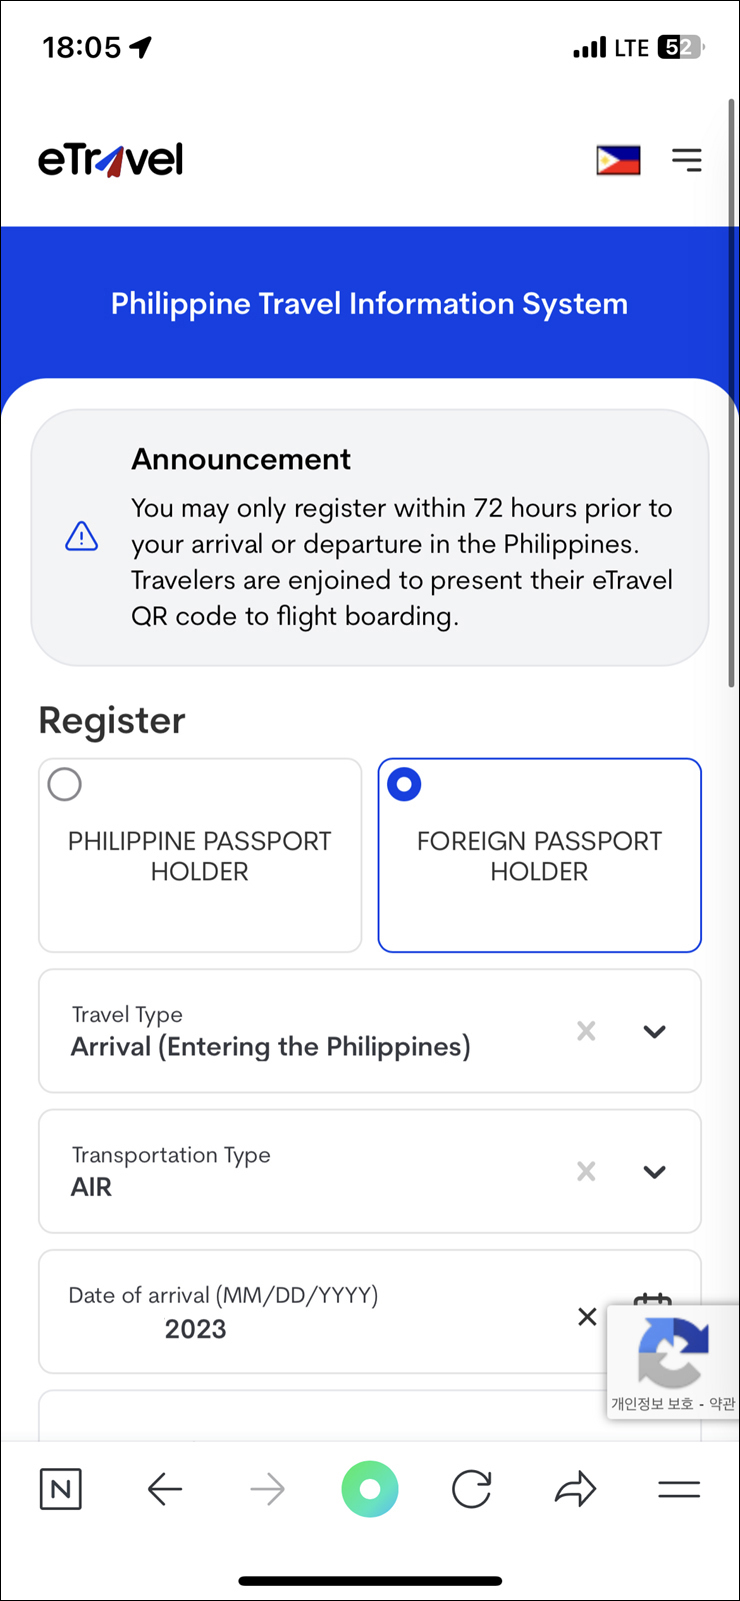 필리핀여행 필리핀 입국 서류 이트래블 eTravel 작성 방법